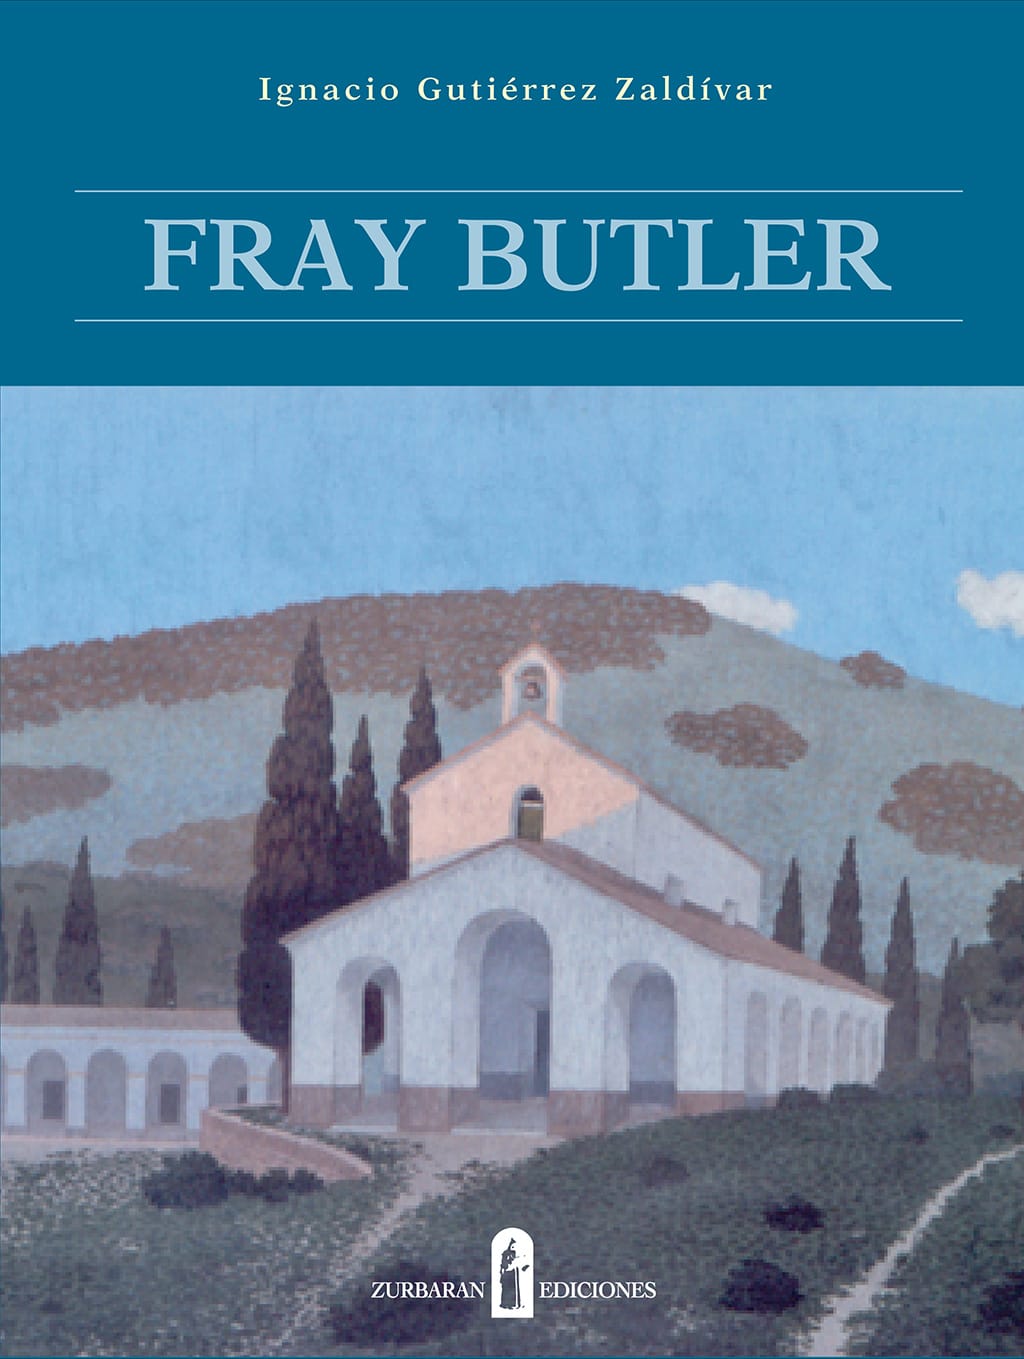 2005-Tapa-libro-Butler.jpg